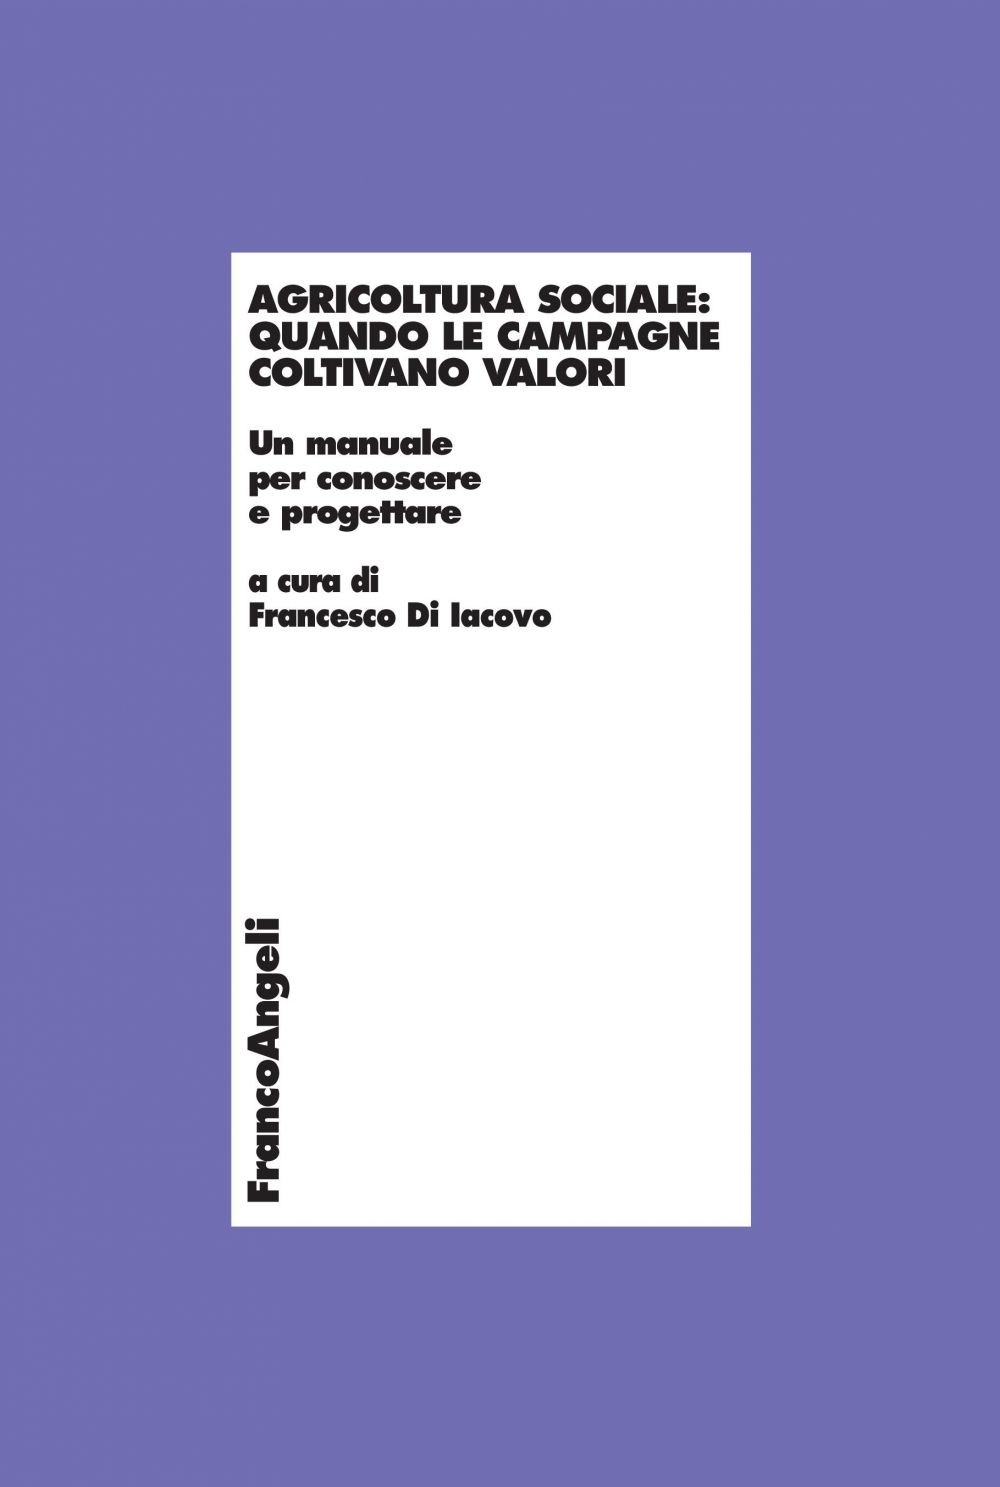 Agricoltura sociale: quando le campagne coltivano valori. Un manuale per conoscere e progettare - Librerie.coop